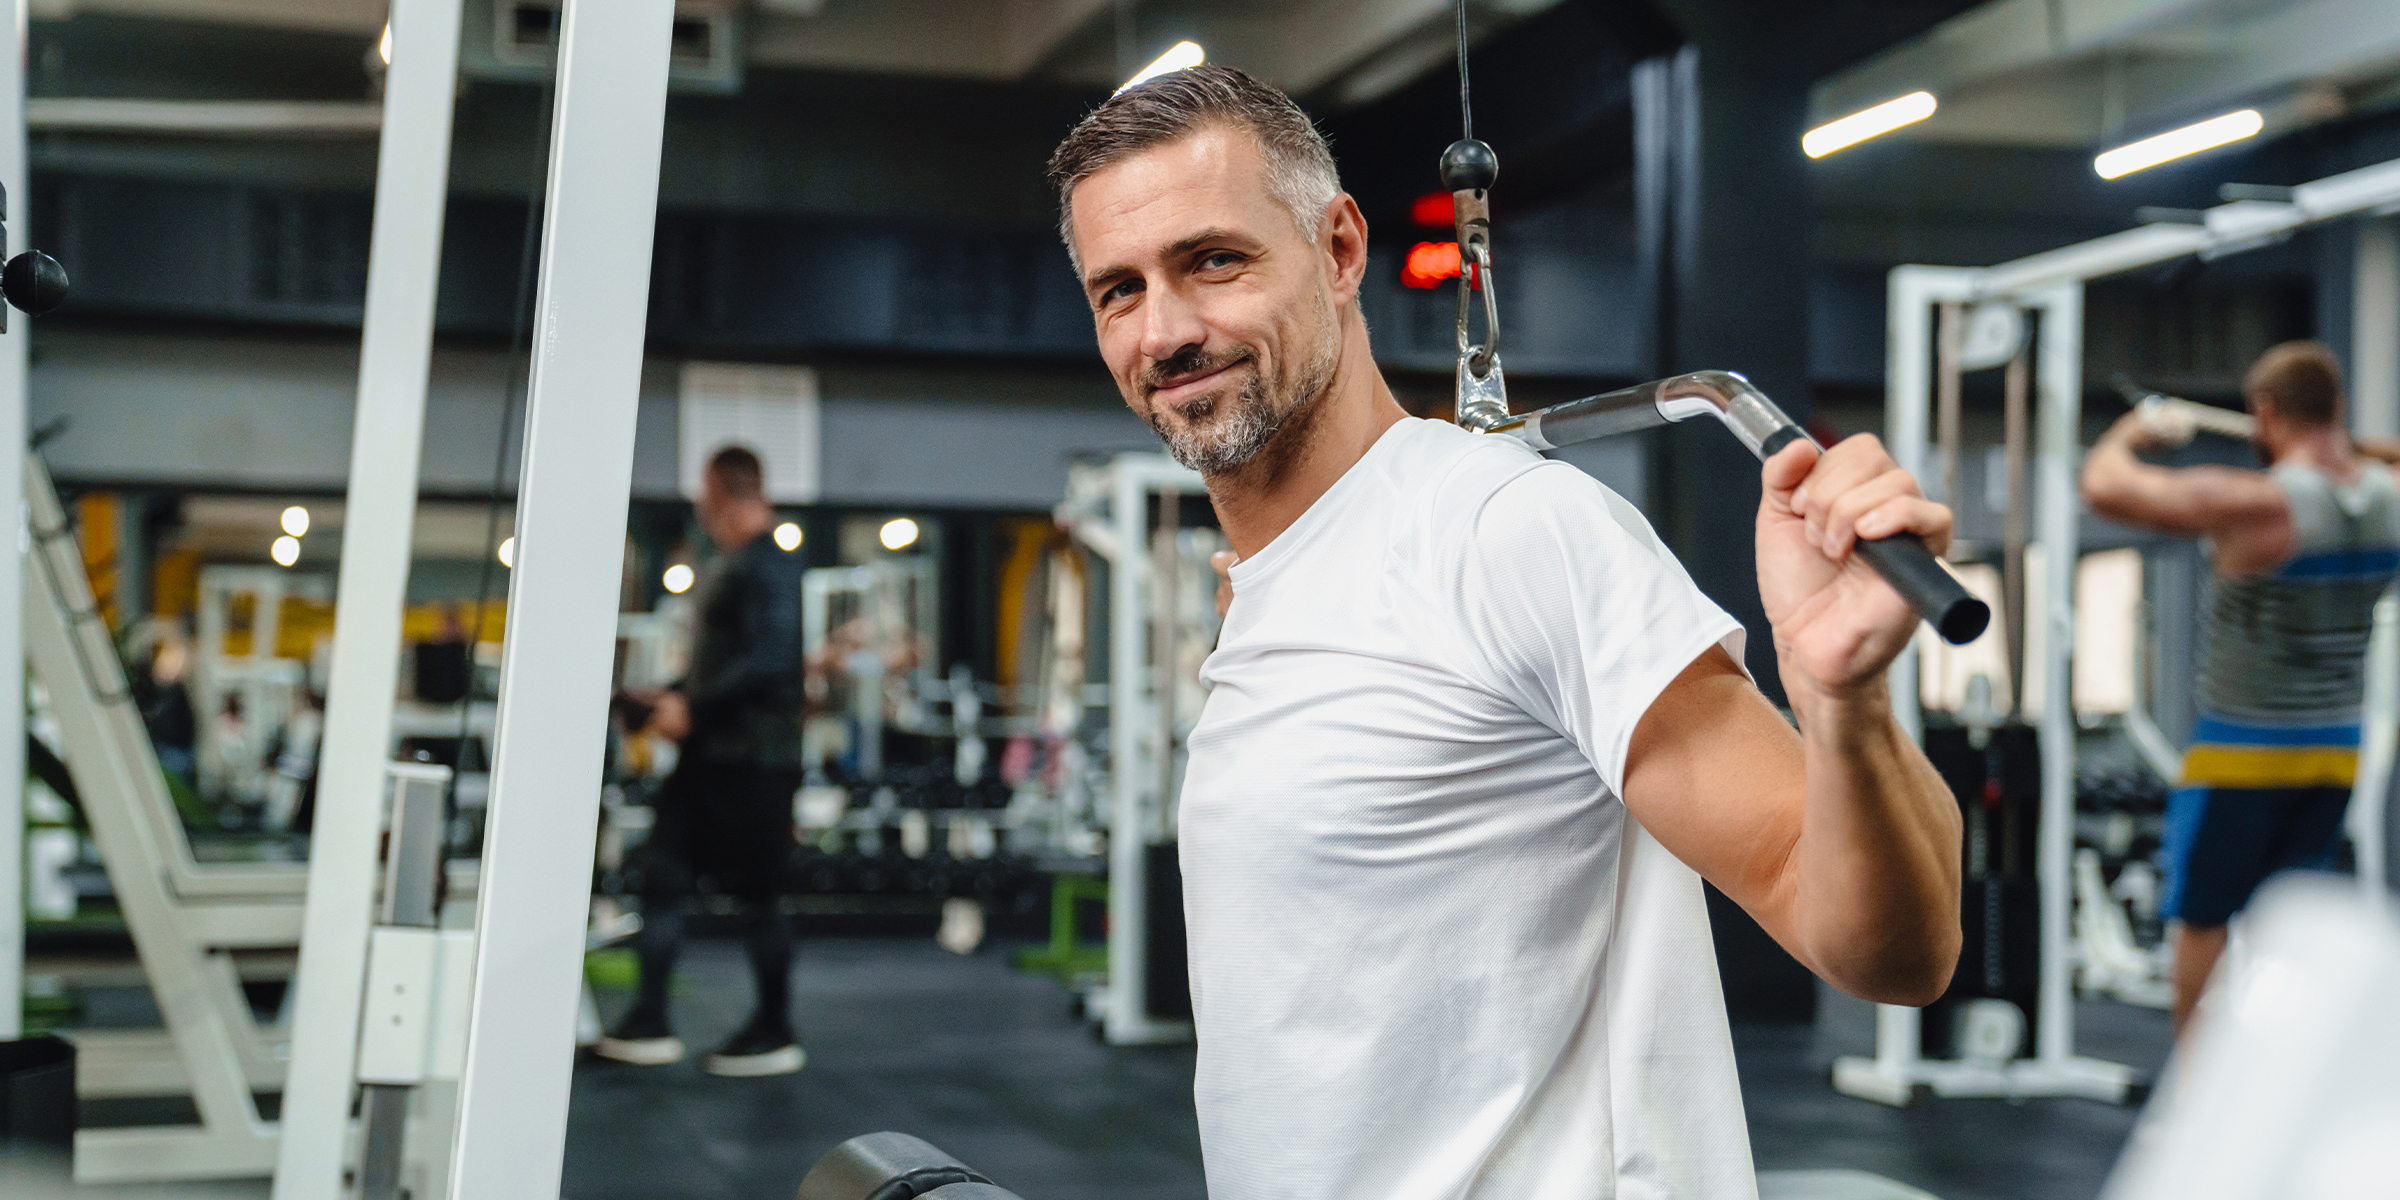 Mann beim Training in einem Fitnessstudio | Quelle: Shutterstock